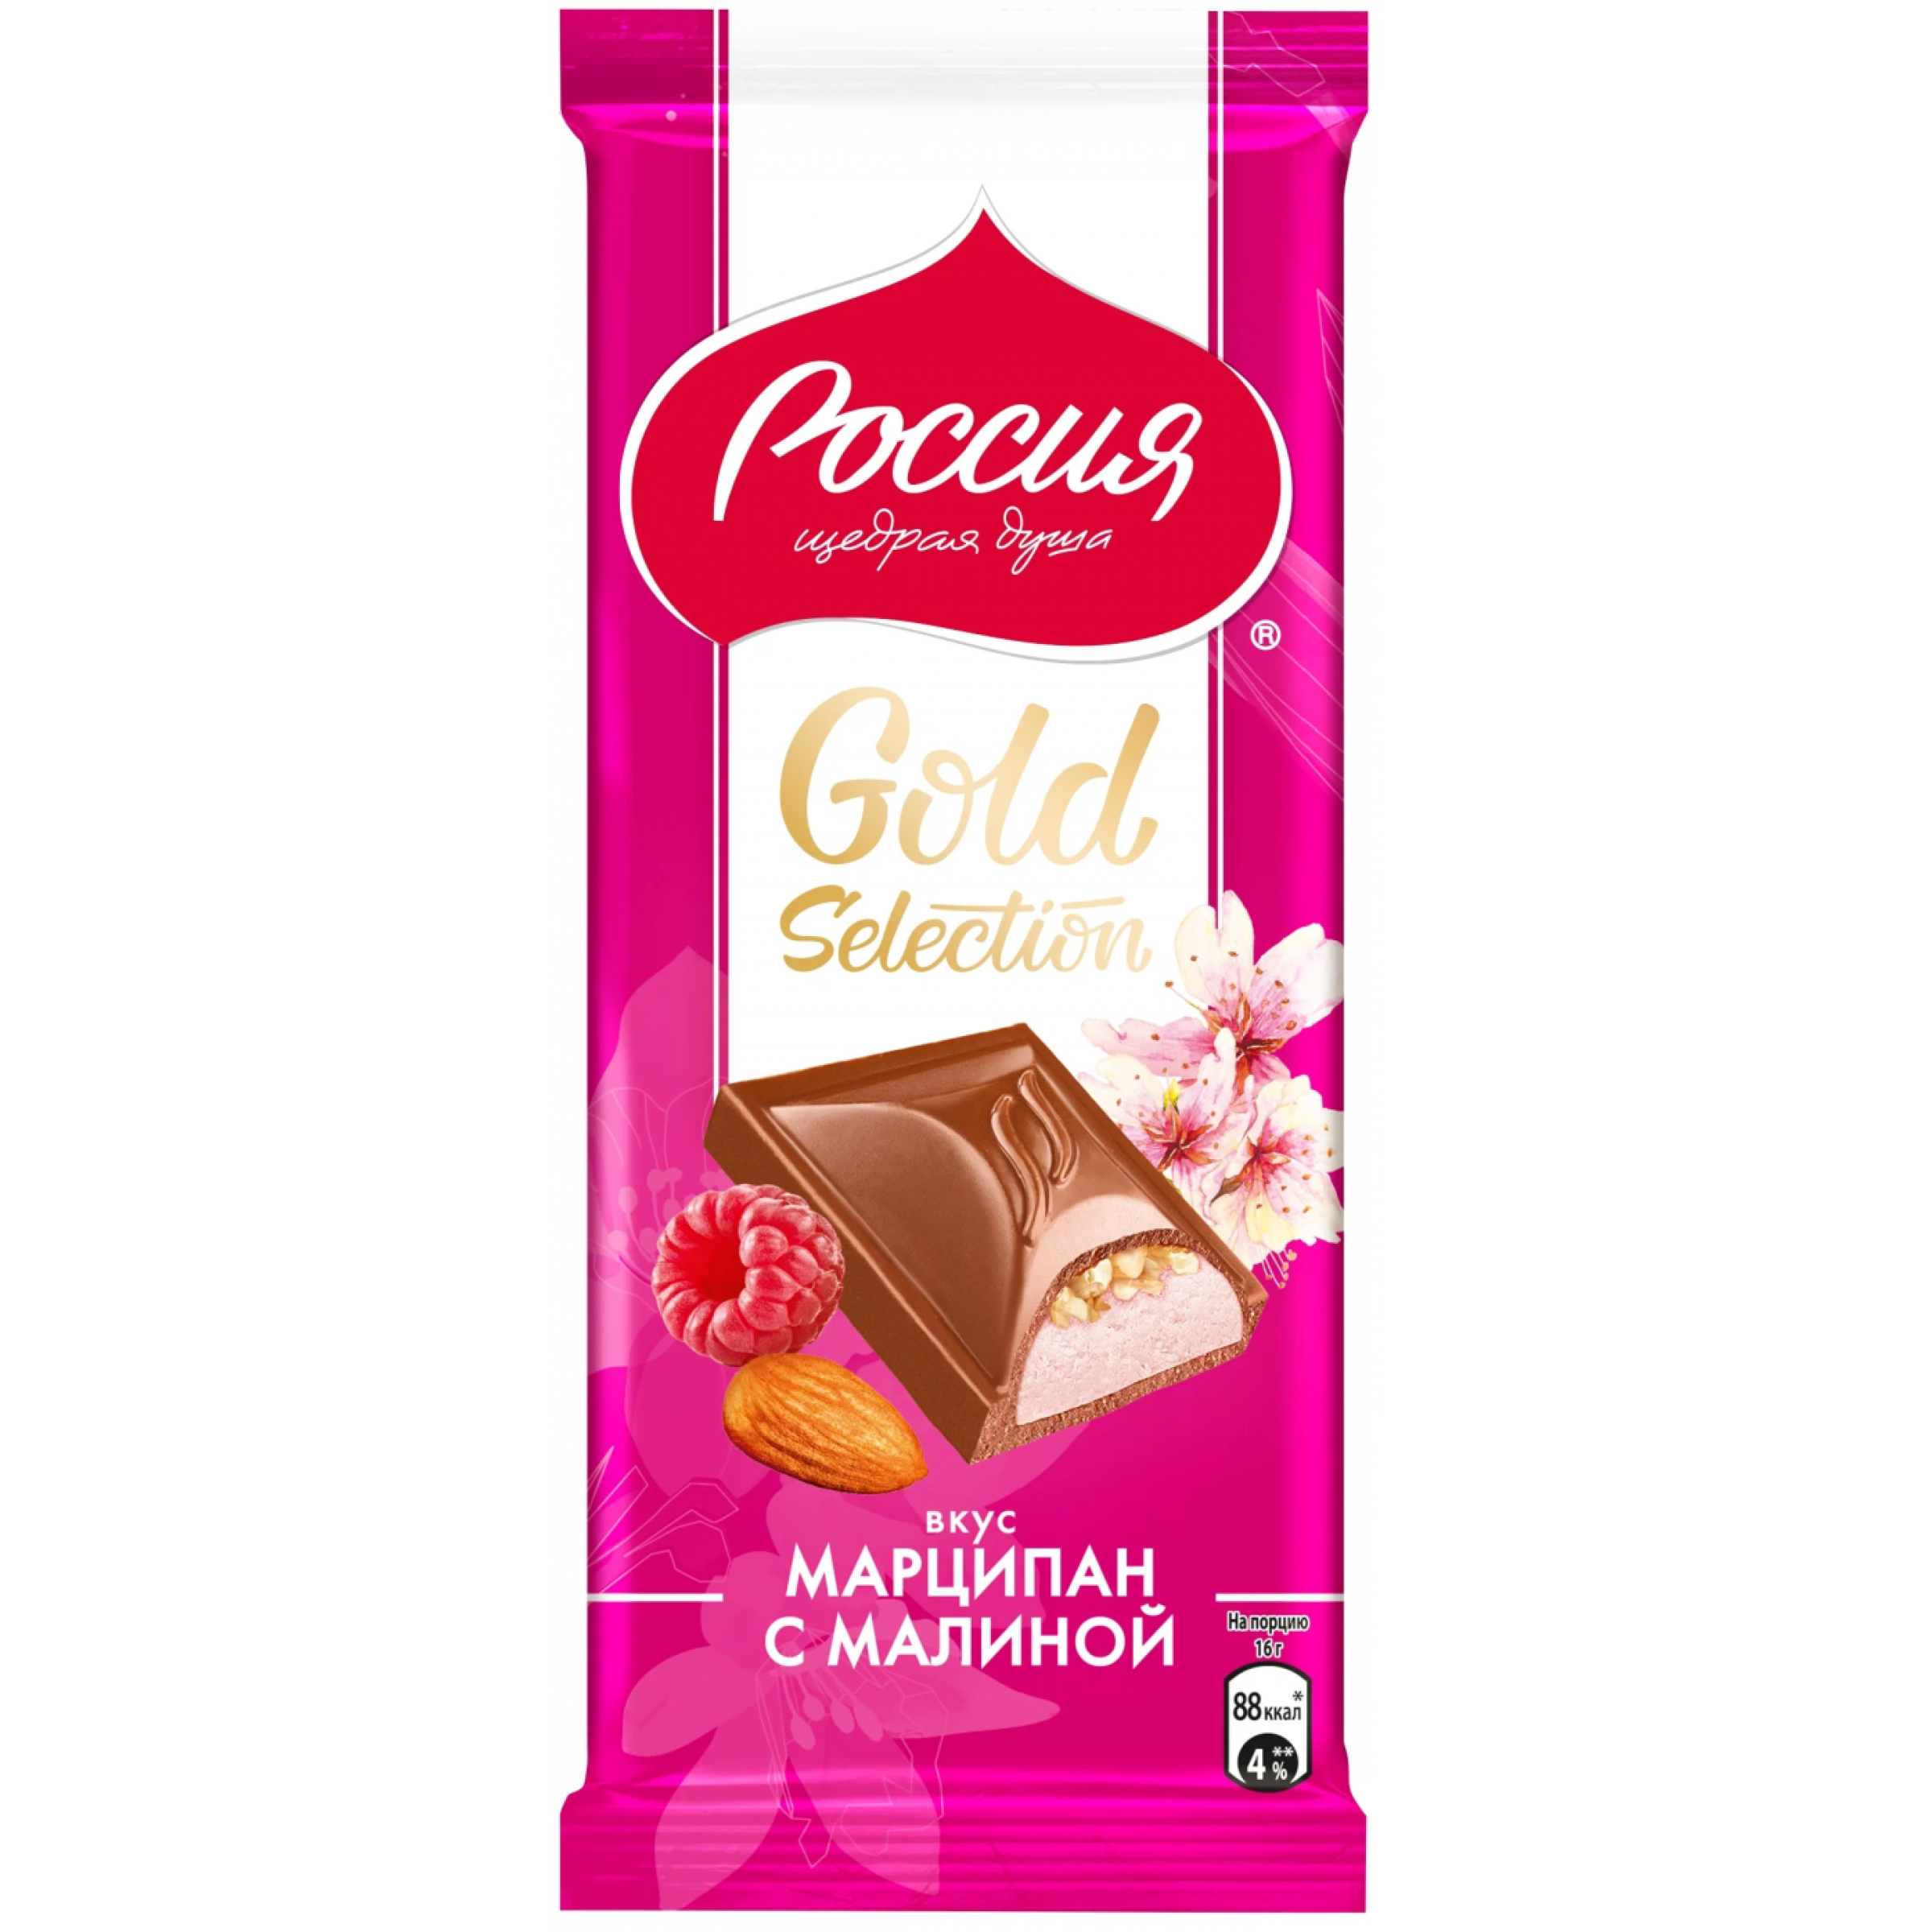 Молочный шоколад Россия - Щедрая душа! Gold Selection с миндалем с начинкой со вкусом марципана с малиной 80 г